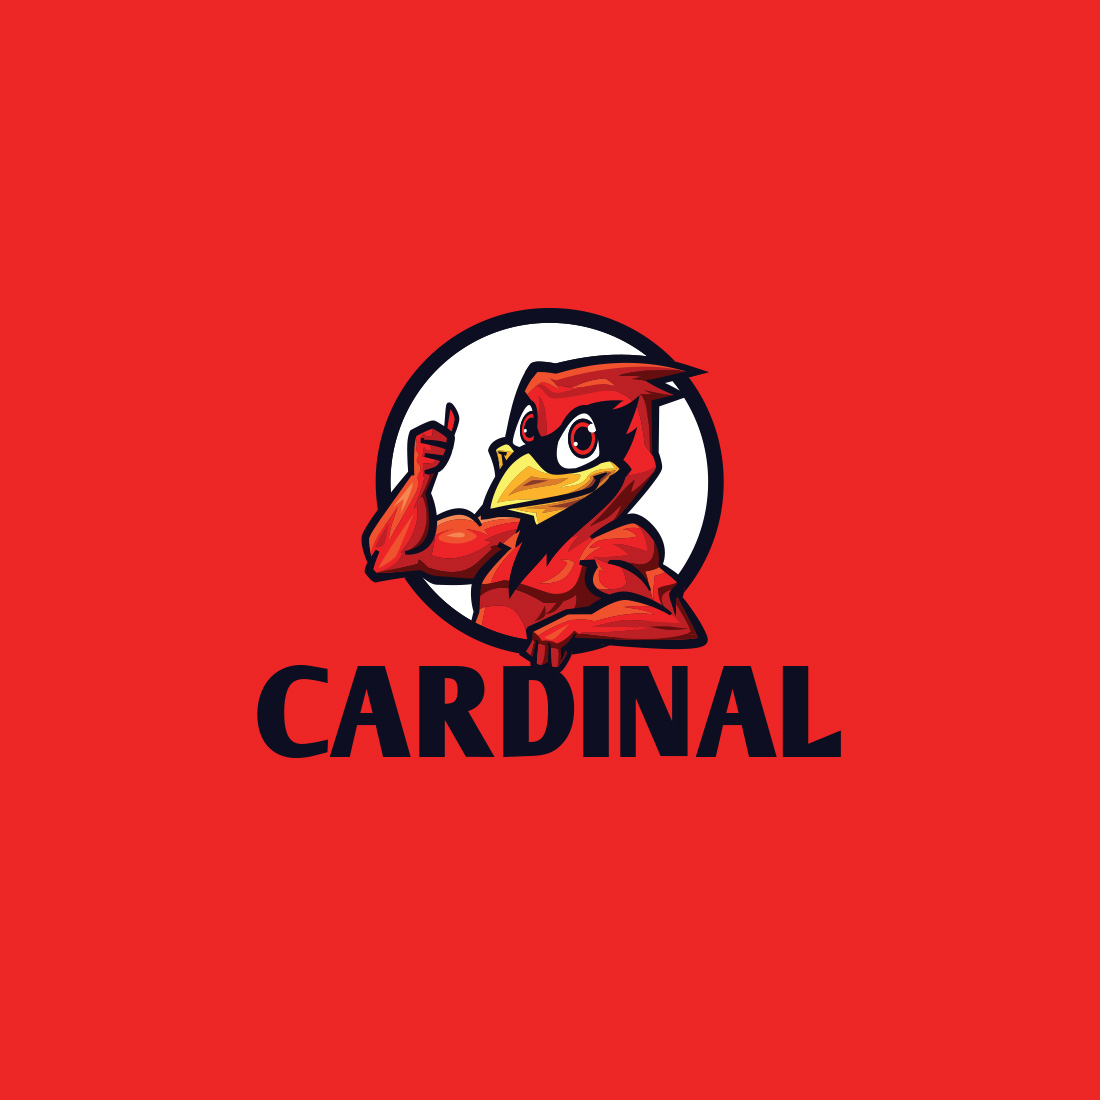 Cartoon Cardinal Charater Mascot Logo